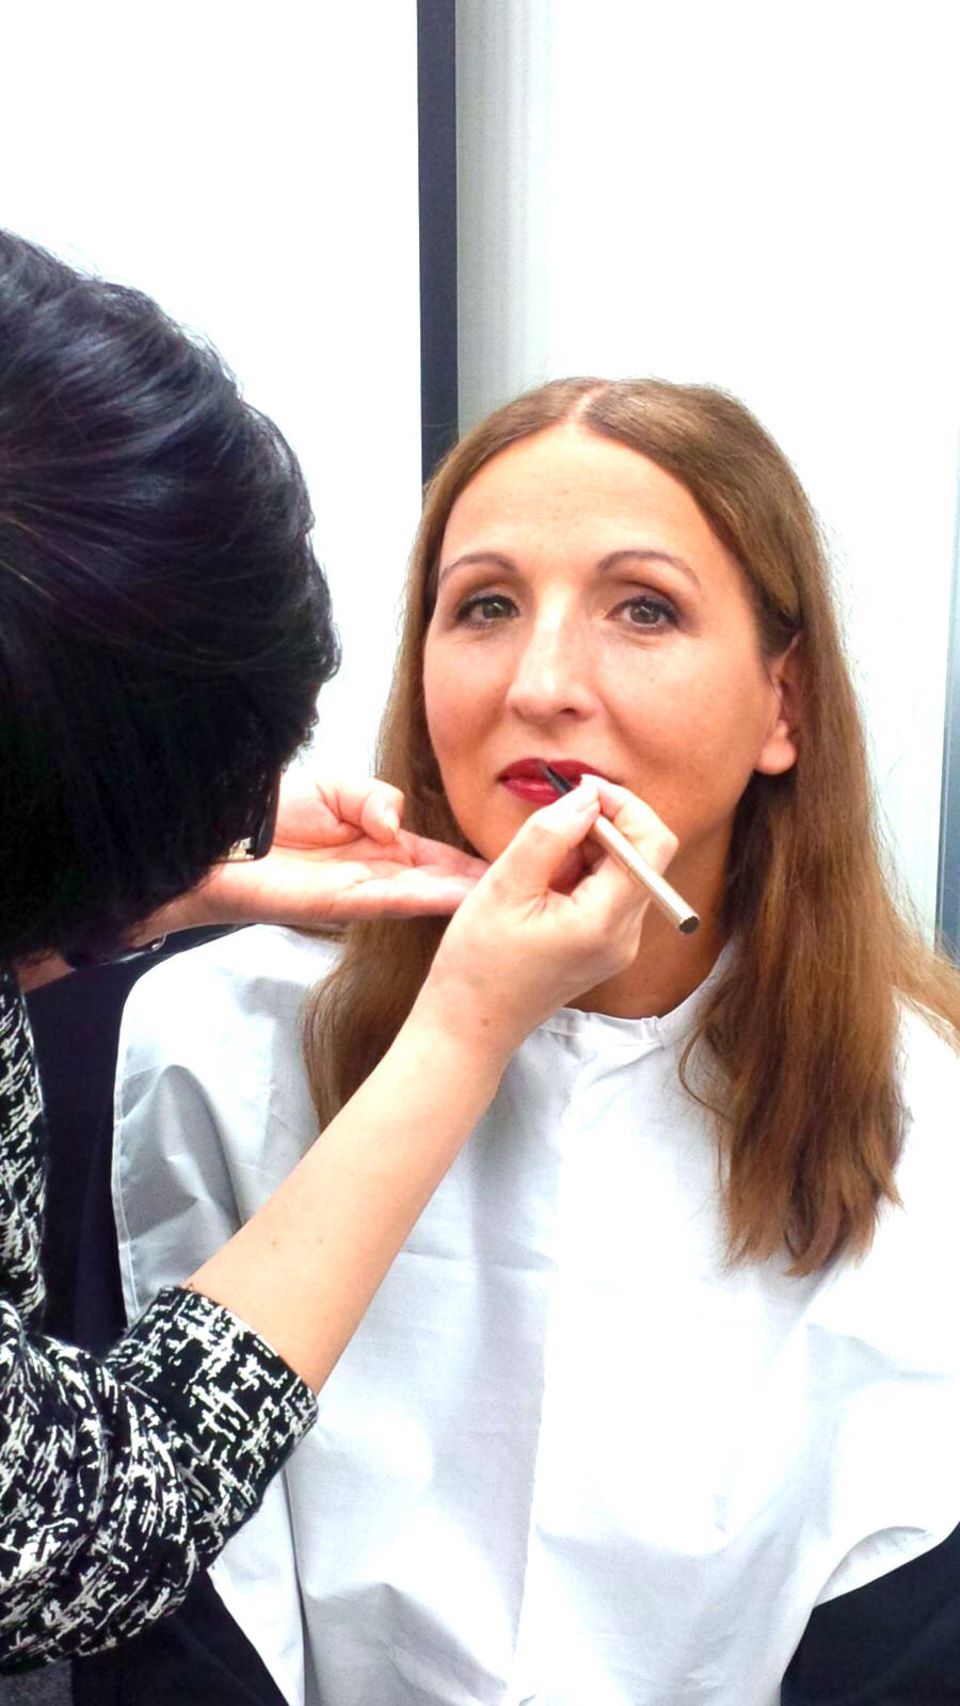 GALA-Beautychefin Frie Kicherer beim Make-up-Workshop in Tokio